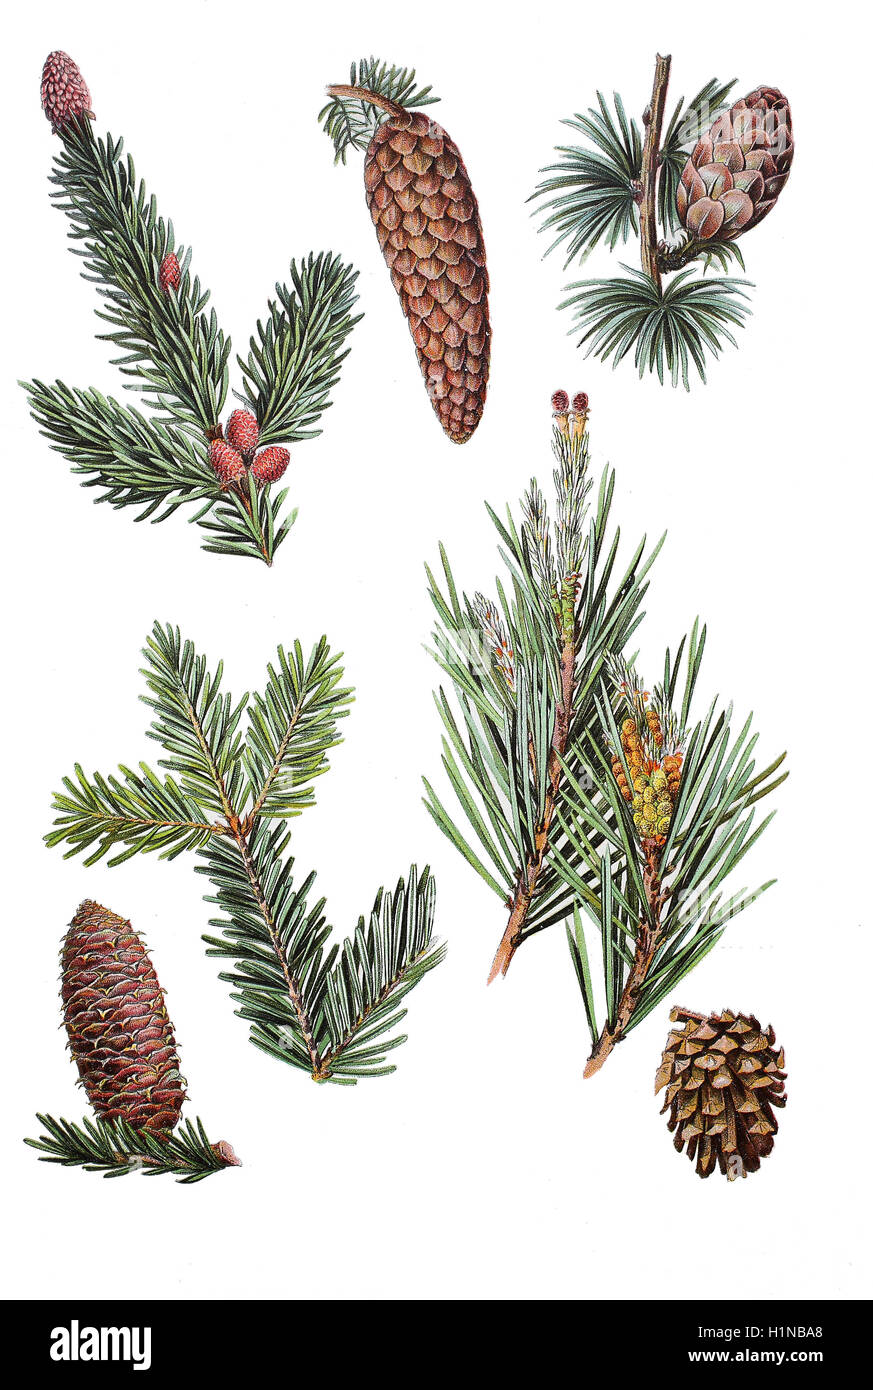 Abete, picea abies (in alto a sinistra), europee larice Larix decidua (in alto a destra), europeo abete Abies alba bottem (sinistra), pino Pinus sylvestris (bottem destra) Foto Stock